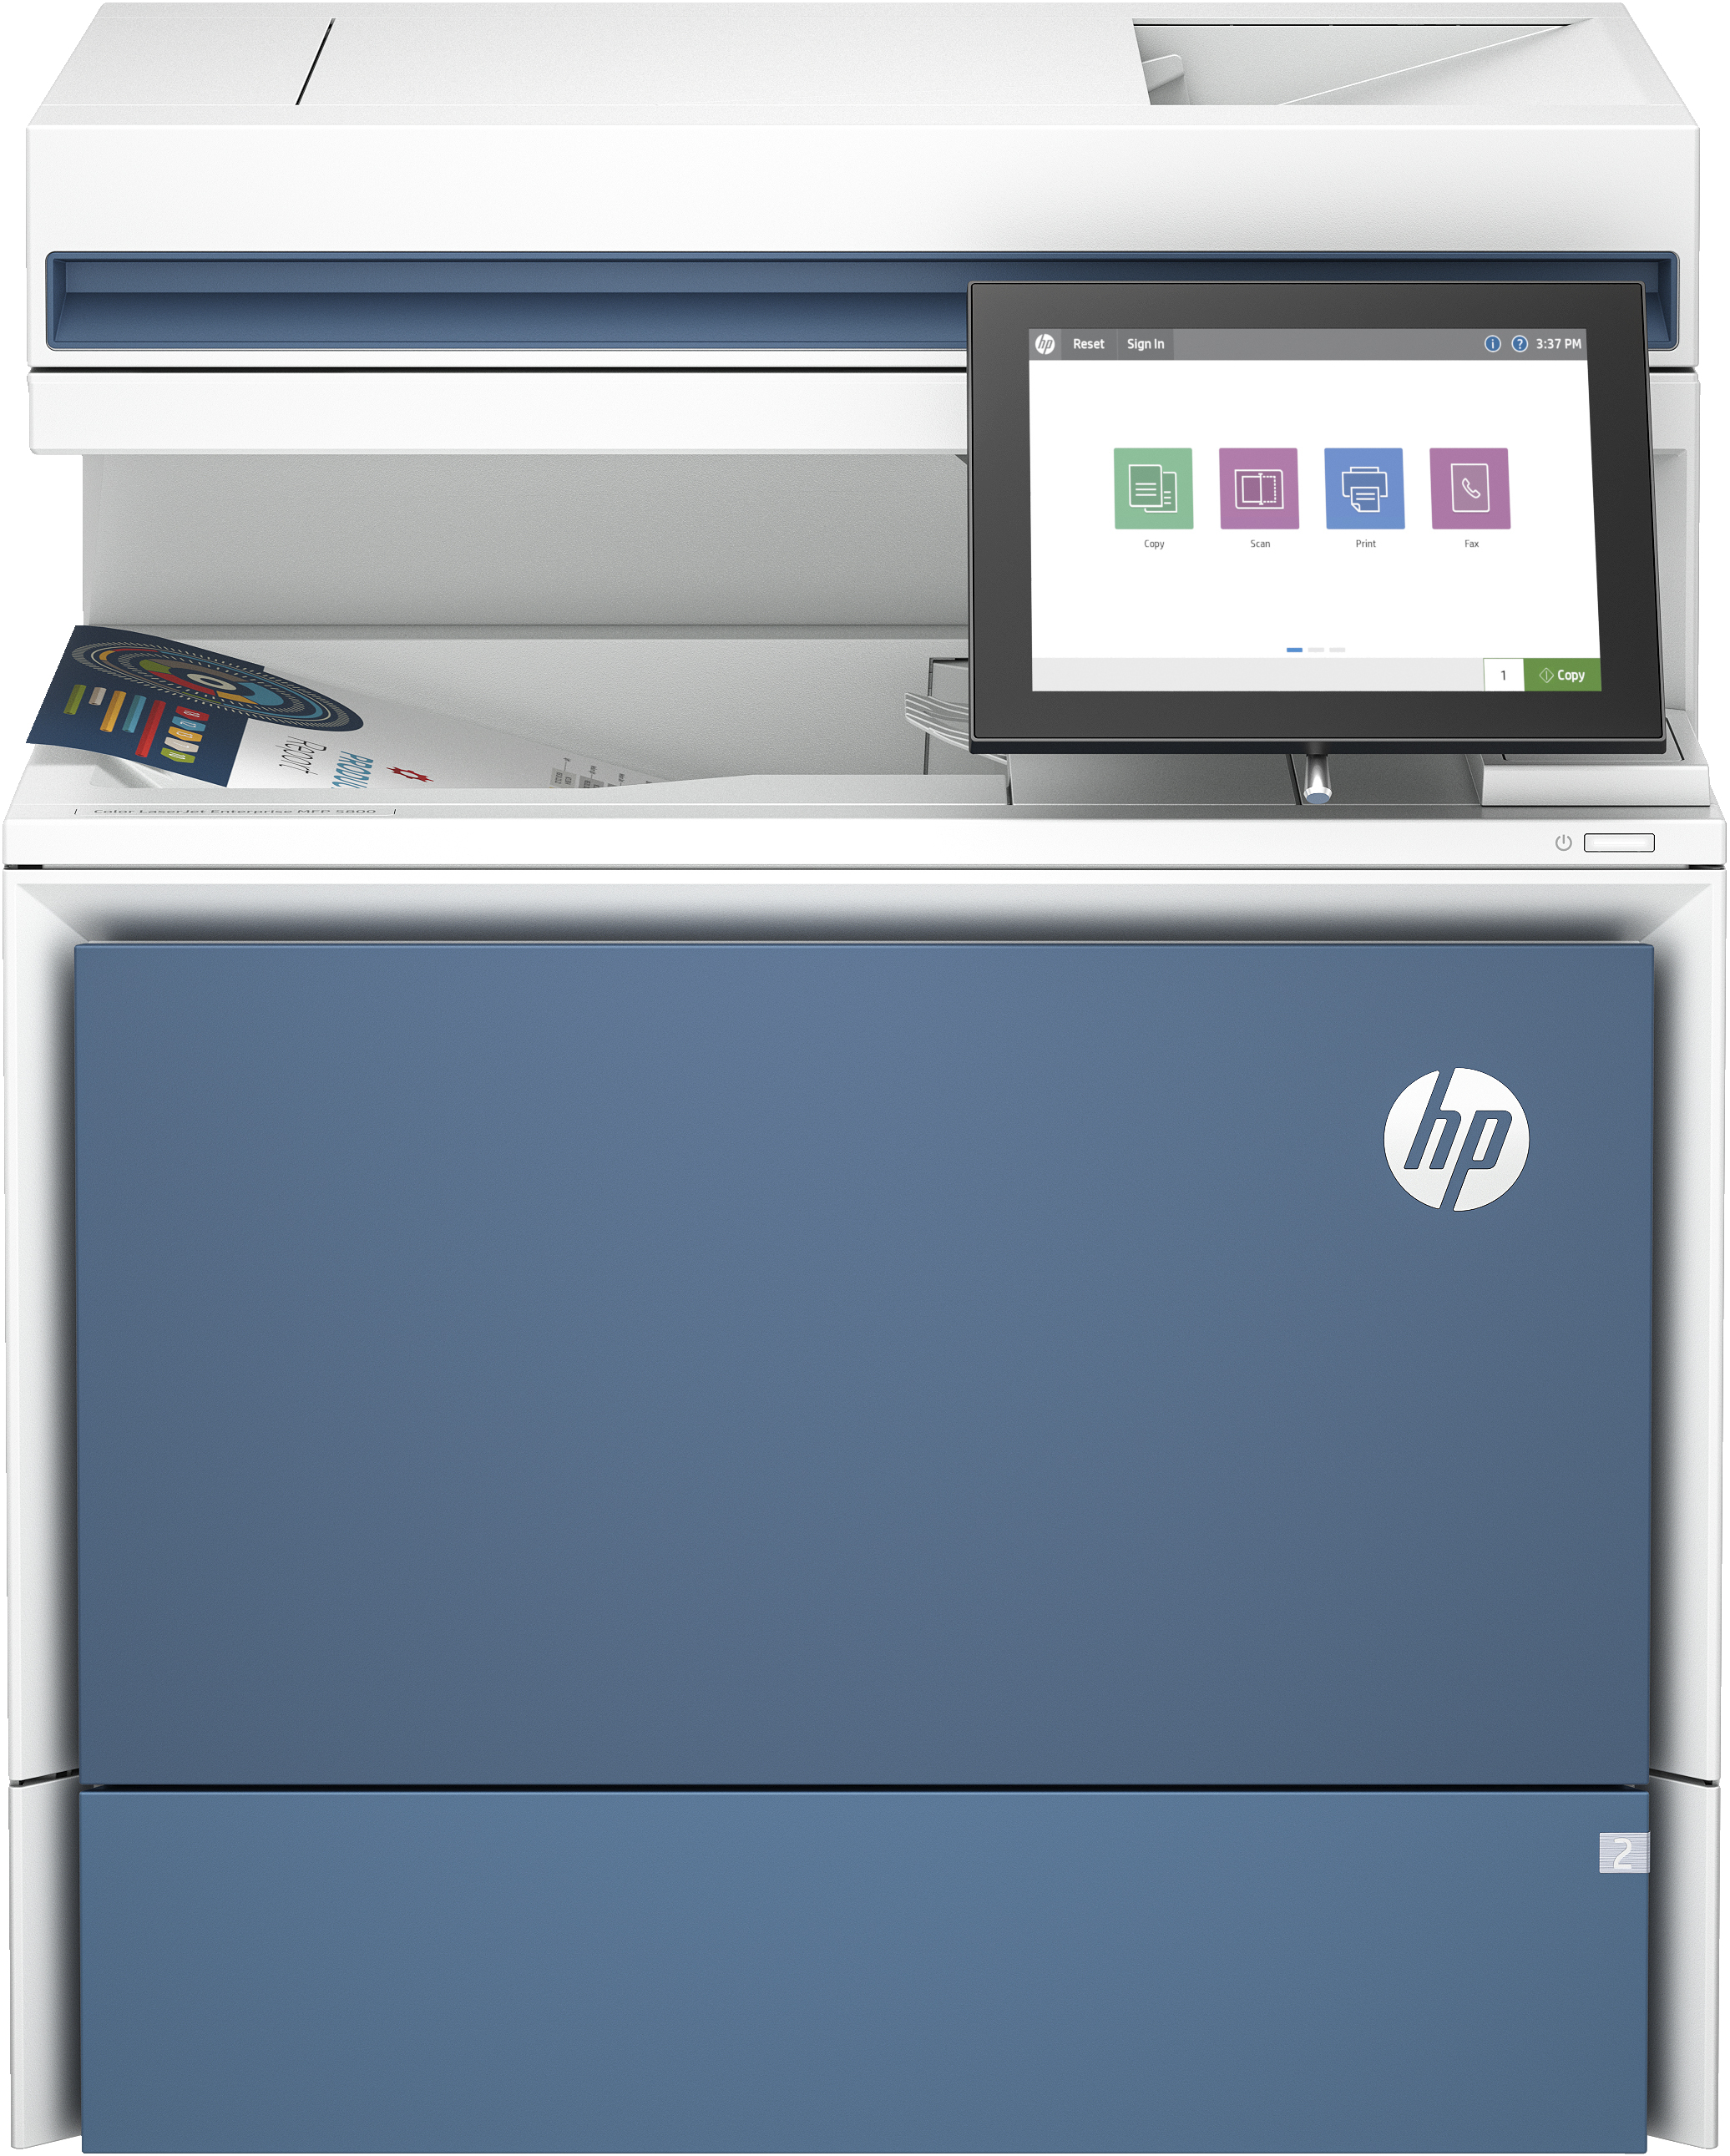 Image of HP LaserJet Stampante multifunzione Color Enterprise 5800dn, Color, Stampante per Stampa, copia, scansione, fax (opzionale), Alimentatore automatico di documenti; vassoi ad alta capacità opzionali; touchscreen; cartuccia TerraJet